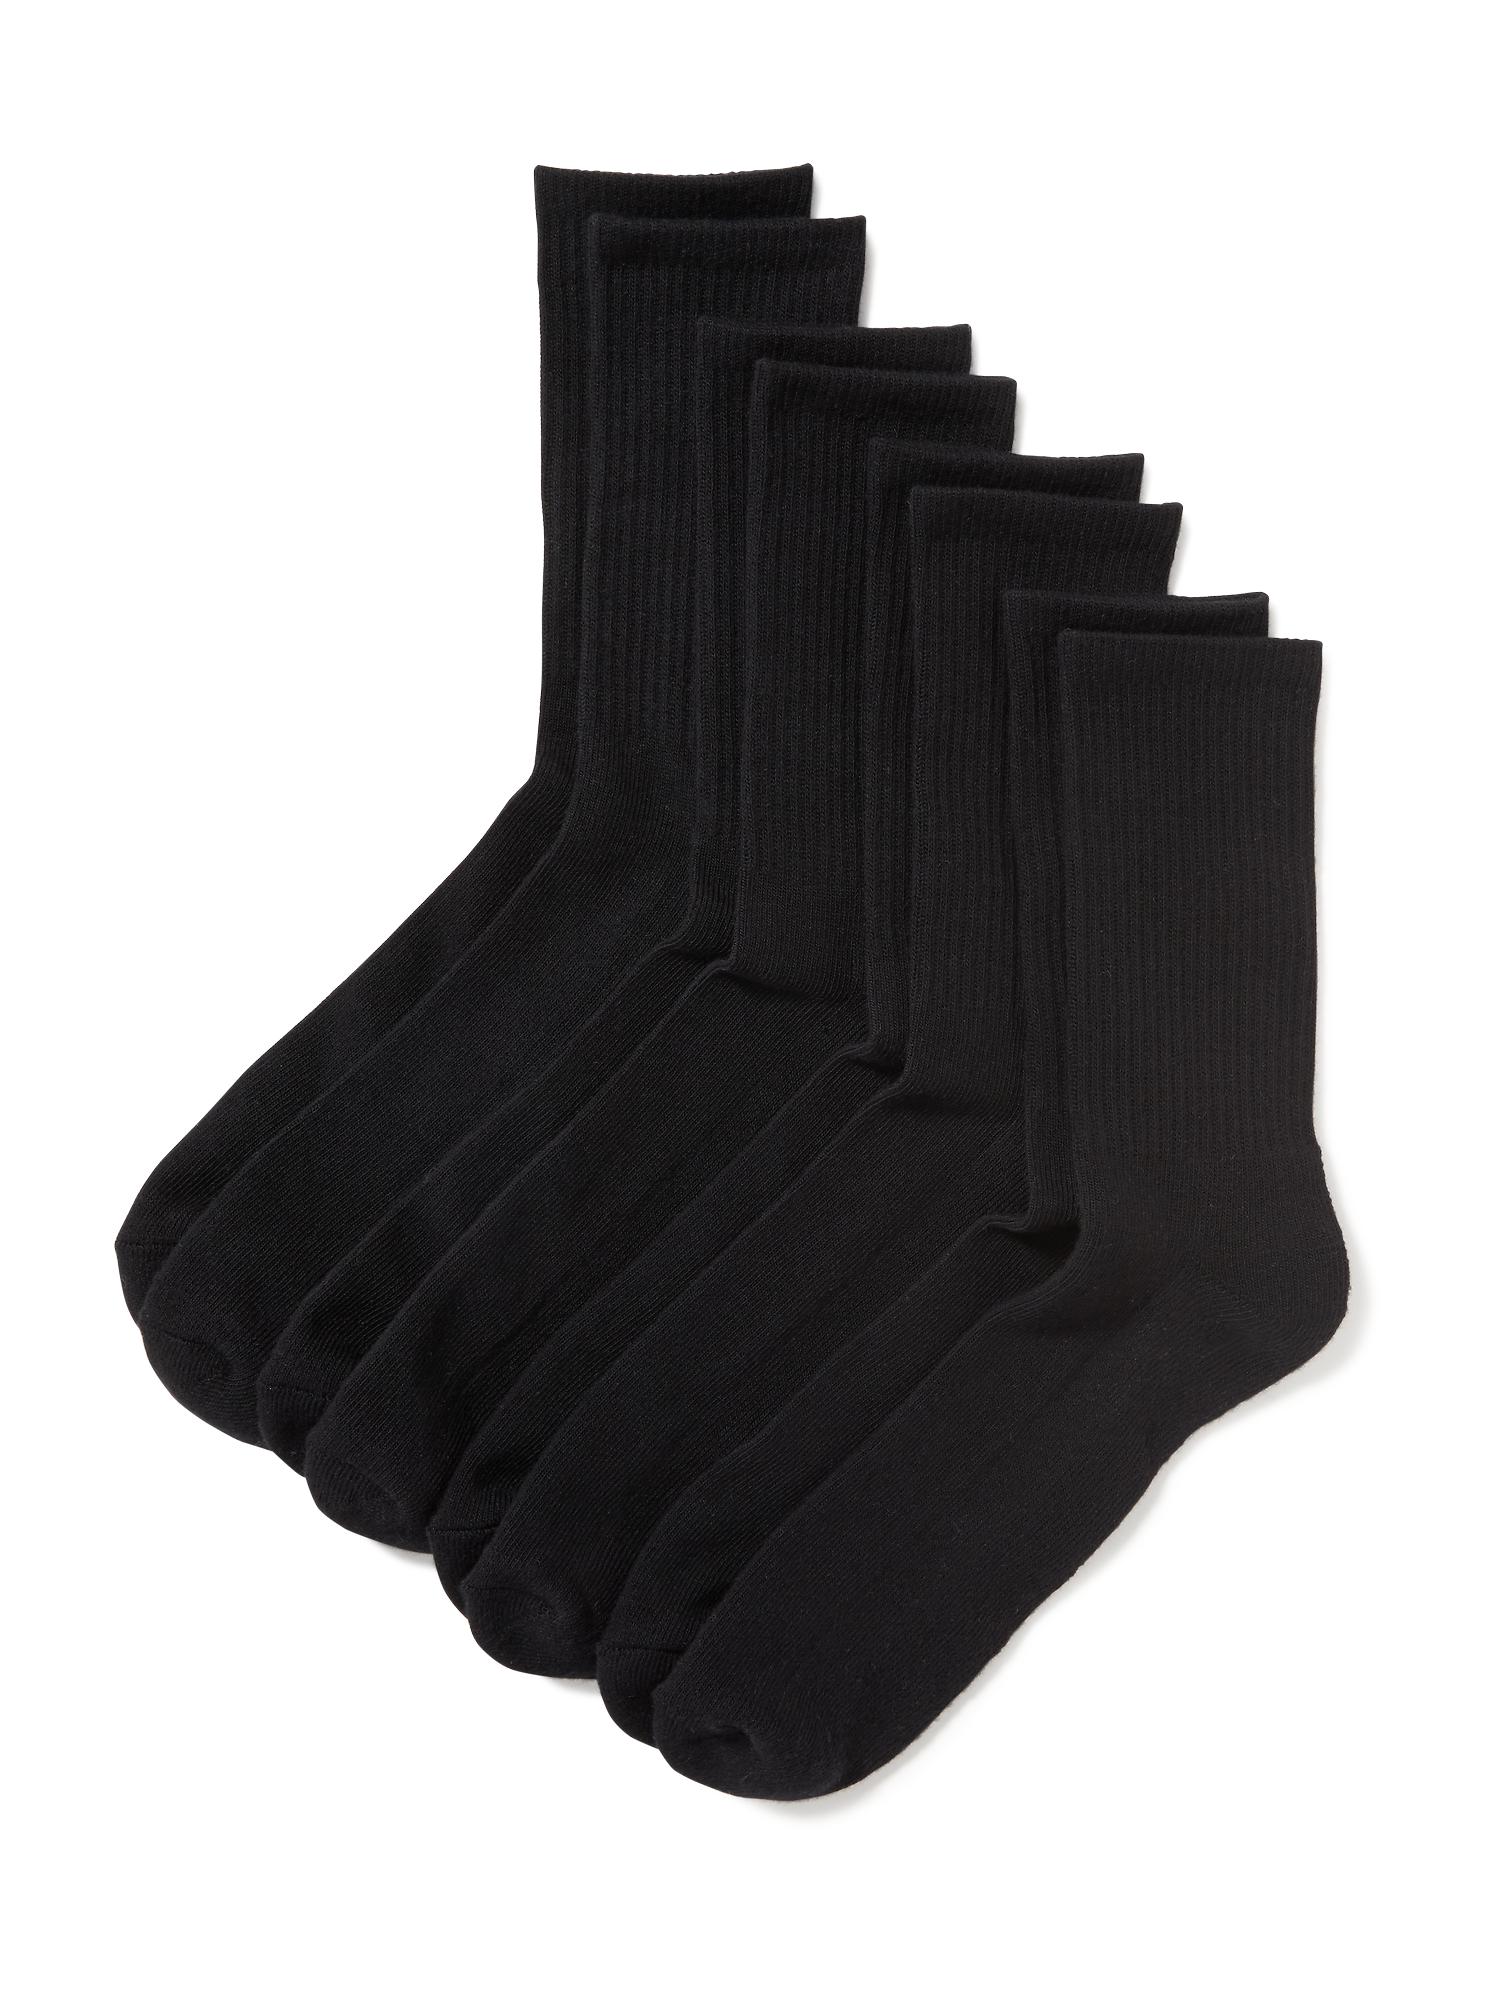 Old Navy Crew-Socks 4-Pack for Men black. 1